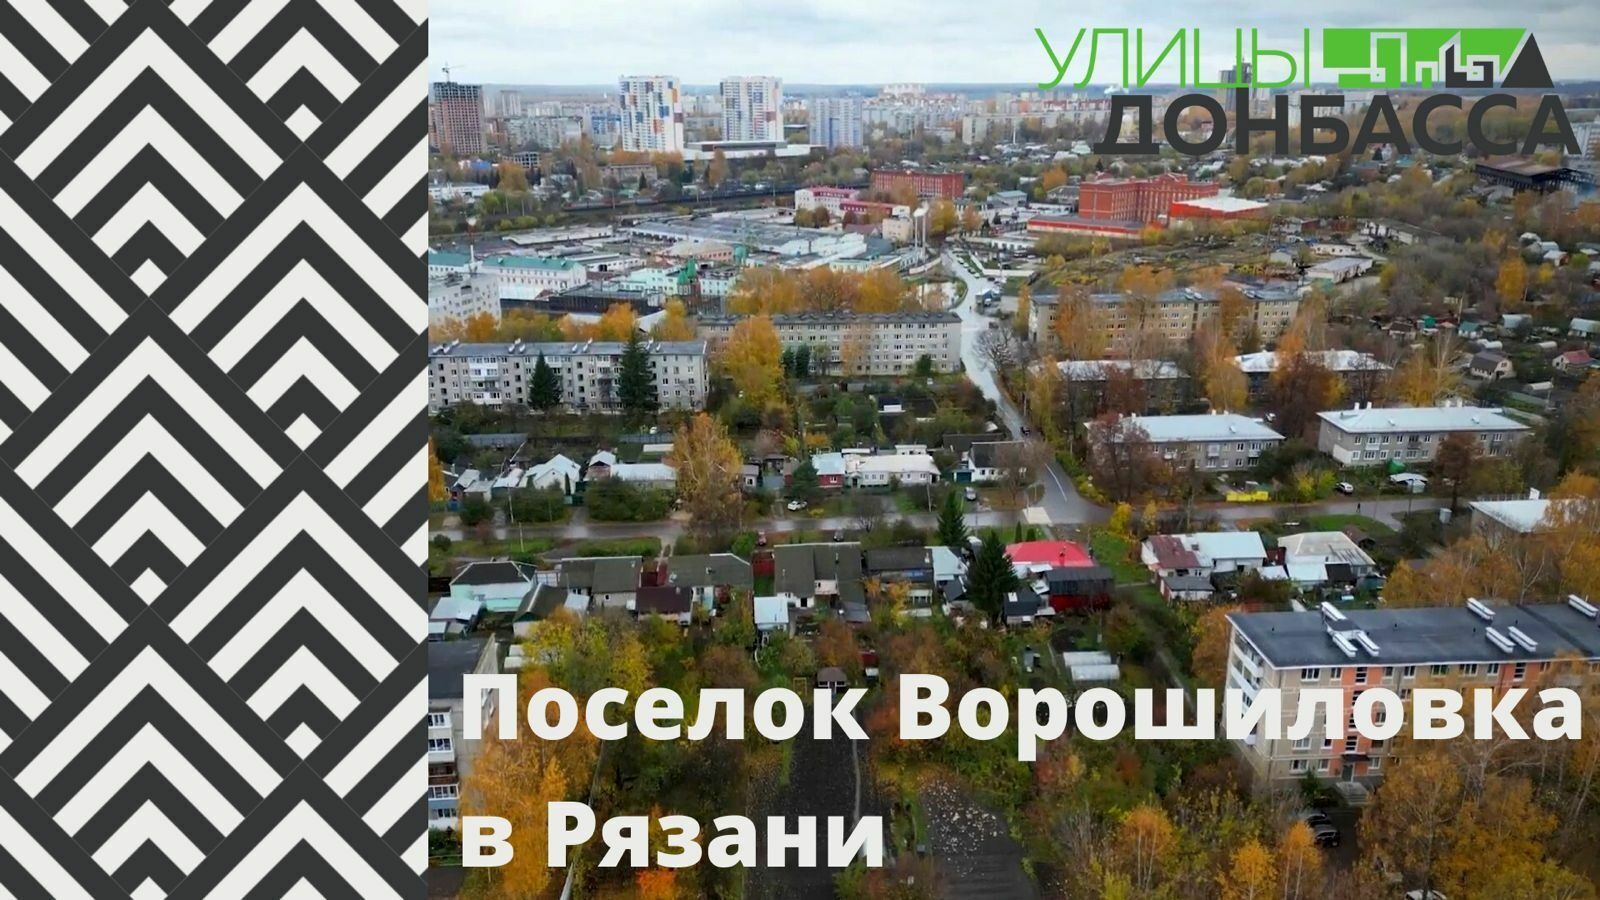 Ворошиловка - рязанский посёлок, названный в честь луганского маршала